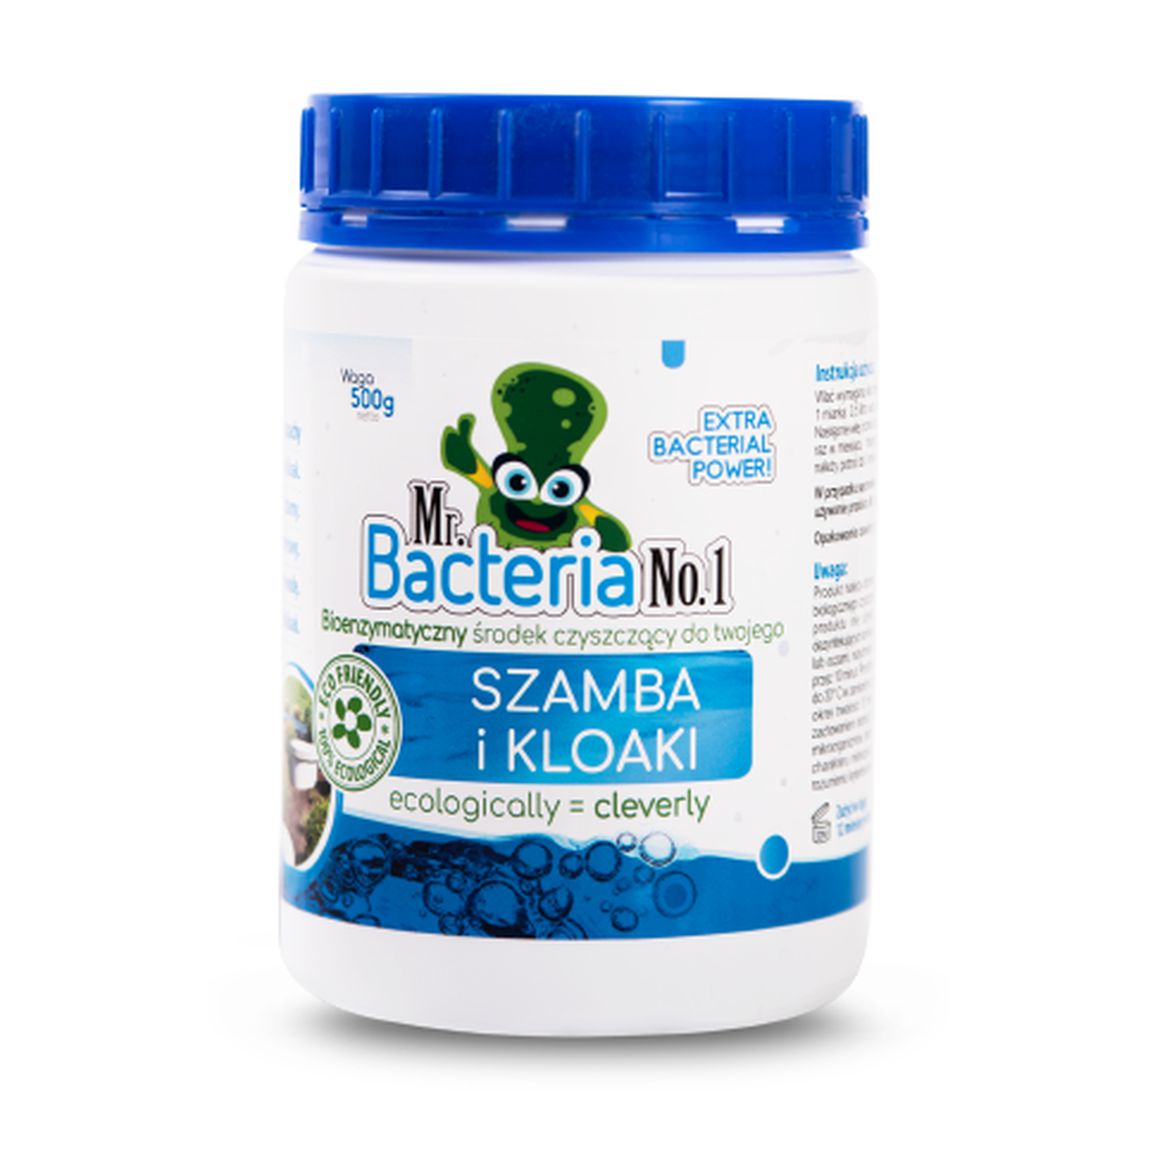 Mr.Bacteria No.1 Bioenzymatyczny środek czyszczący do twojego